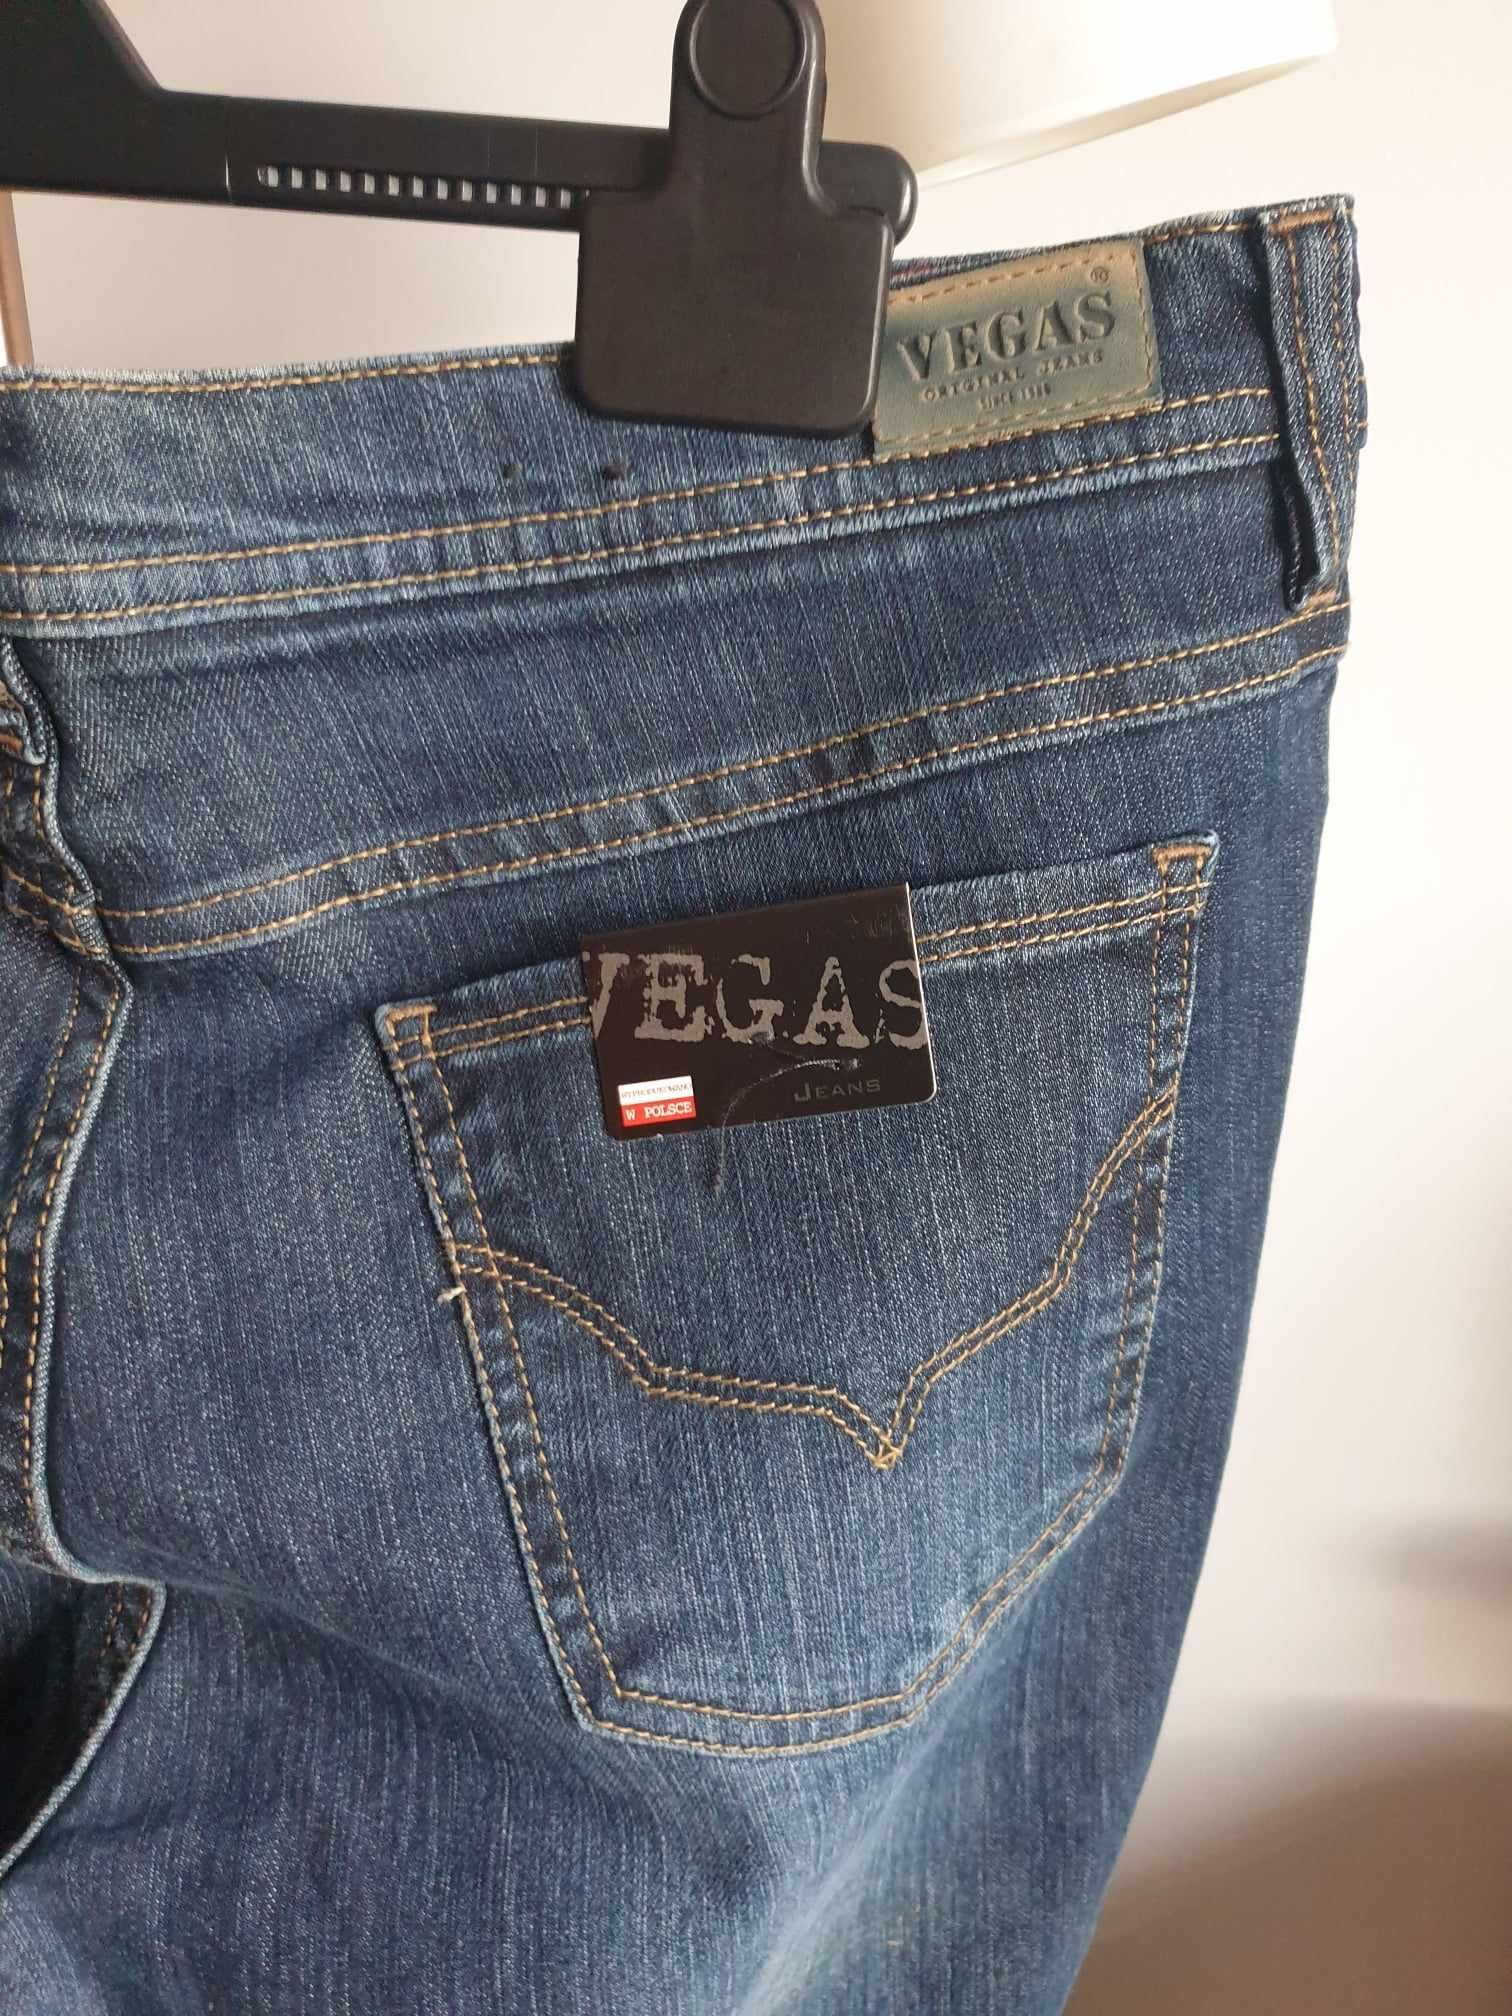 Spodnie damskie jeansowe Vegas wyprodukowane w Polsce